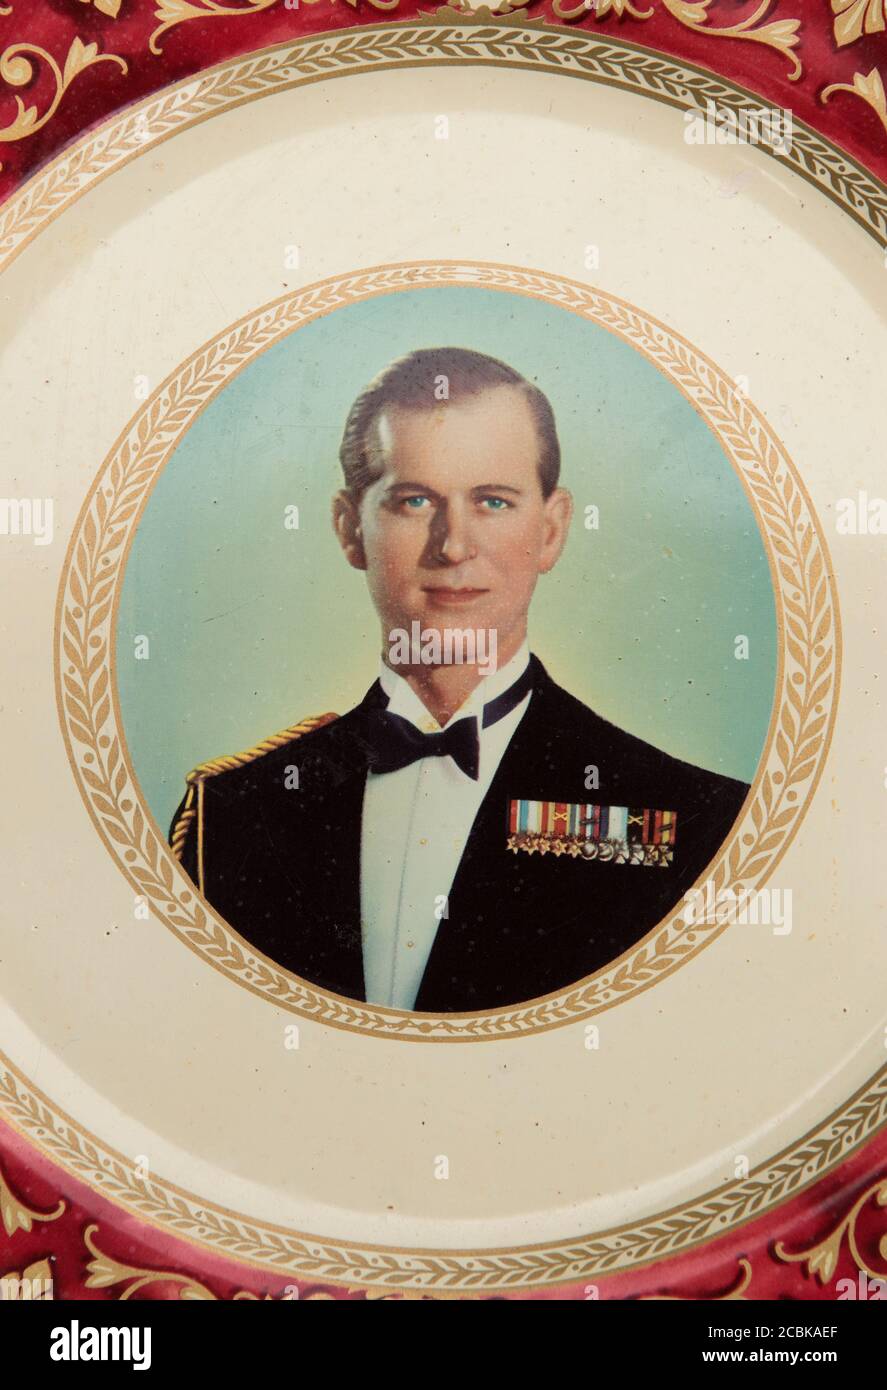 Portrait du duc d'Édimbourg, sur une Coronation 2 juin 1953 souvenir d'époque Portland Ware plaque en étain. HOMER SYKES Banque D'Images